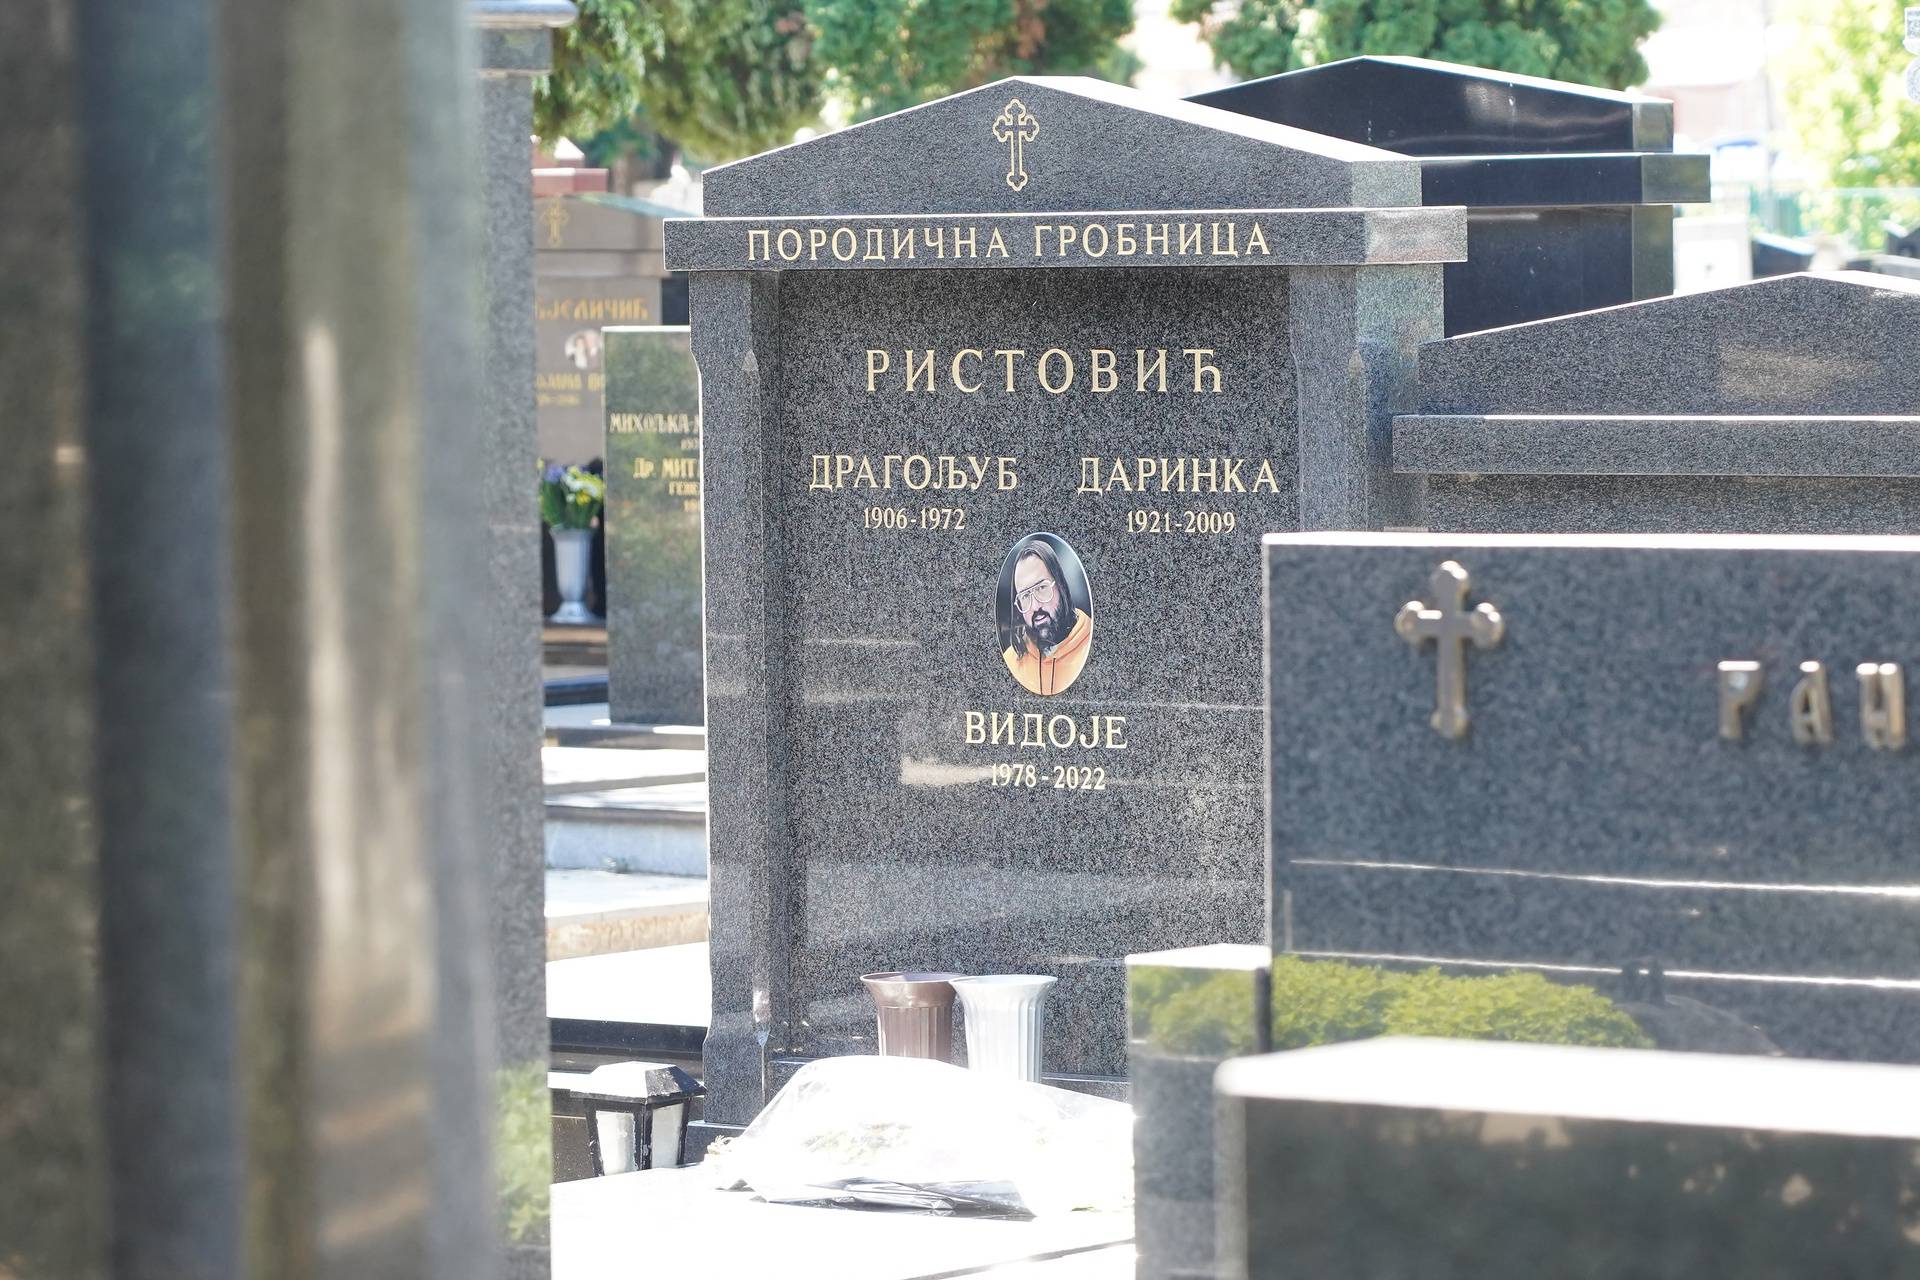 Obilježeno 40 dana od smrti Vidoja Ristovi?a  na Novom groblju u Beogradu